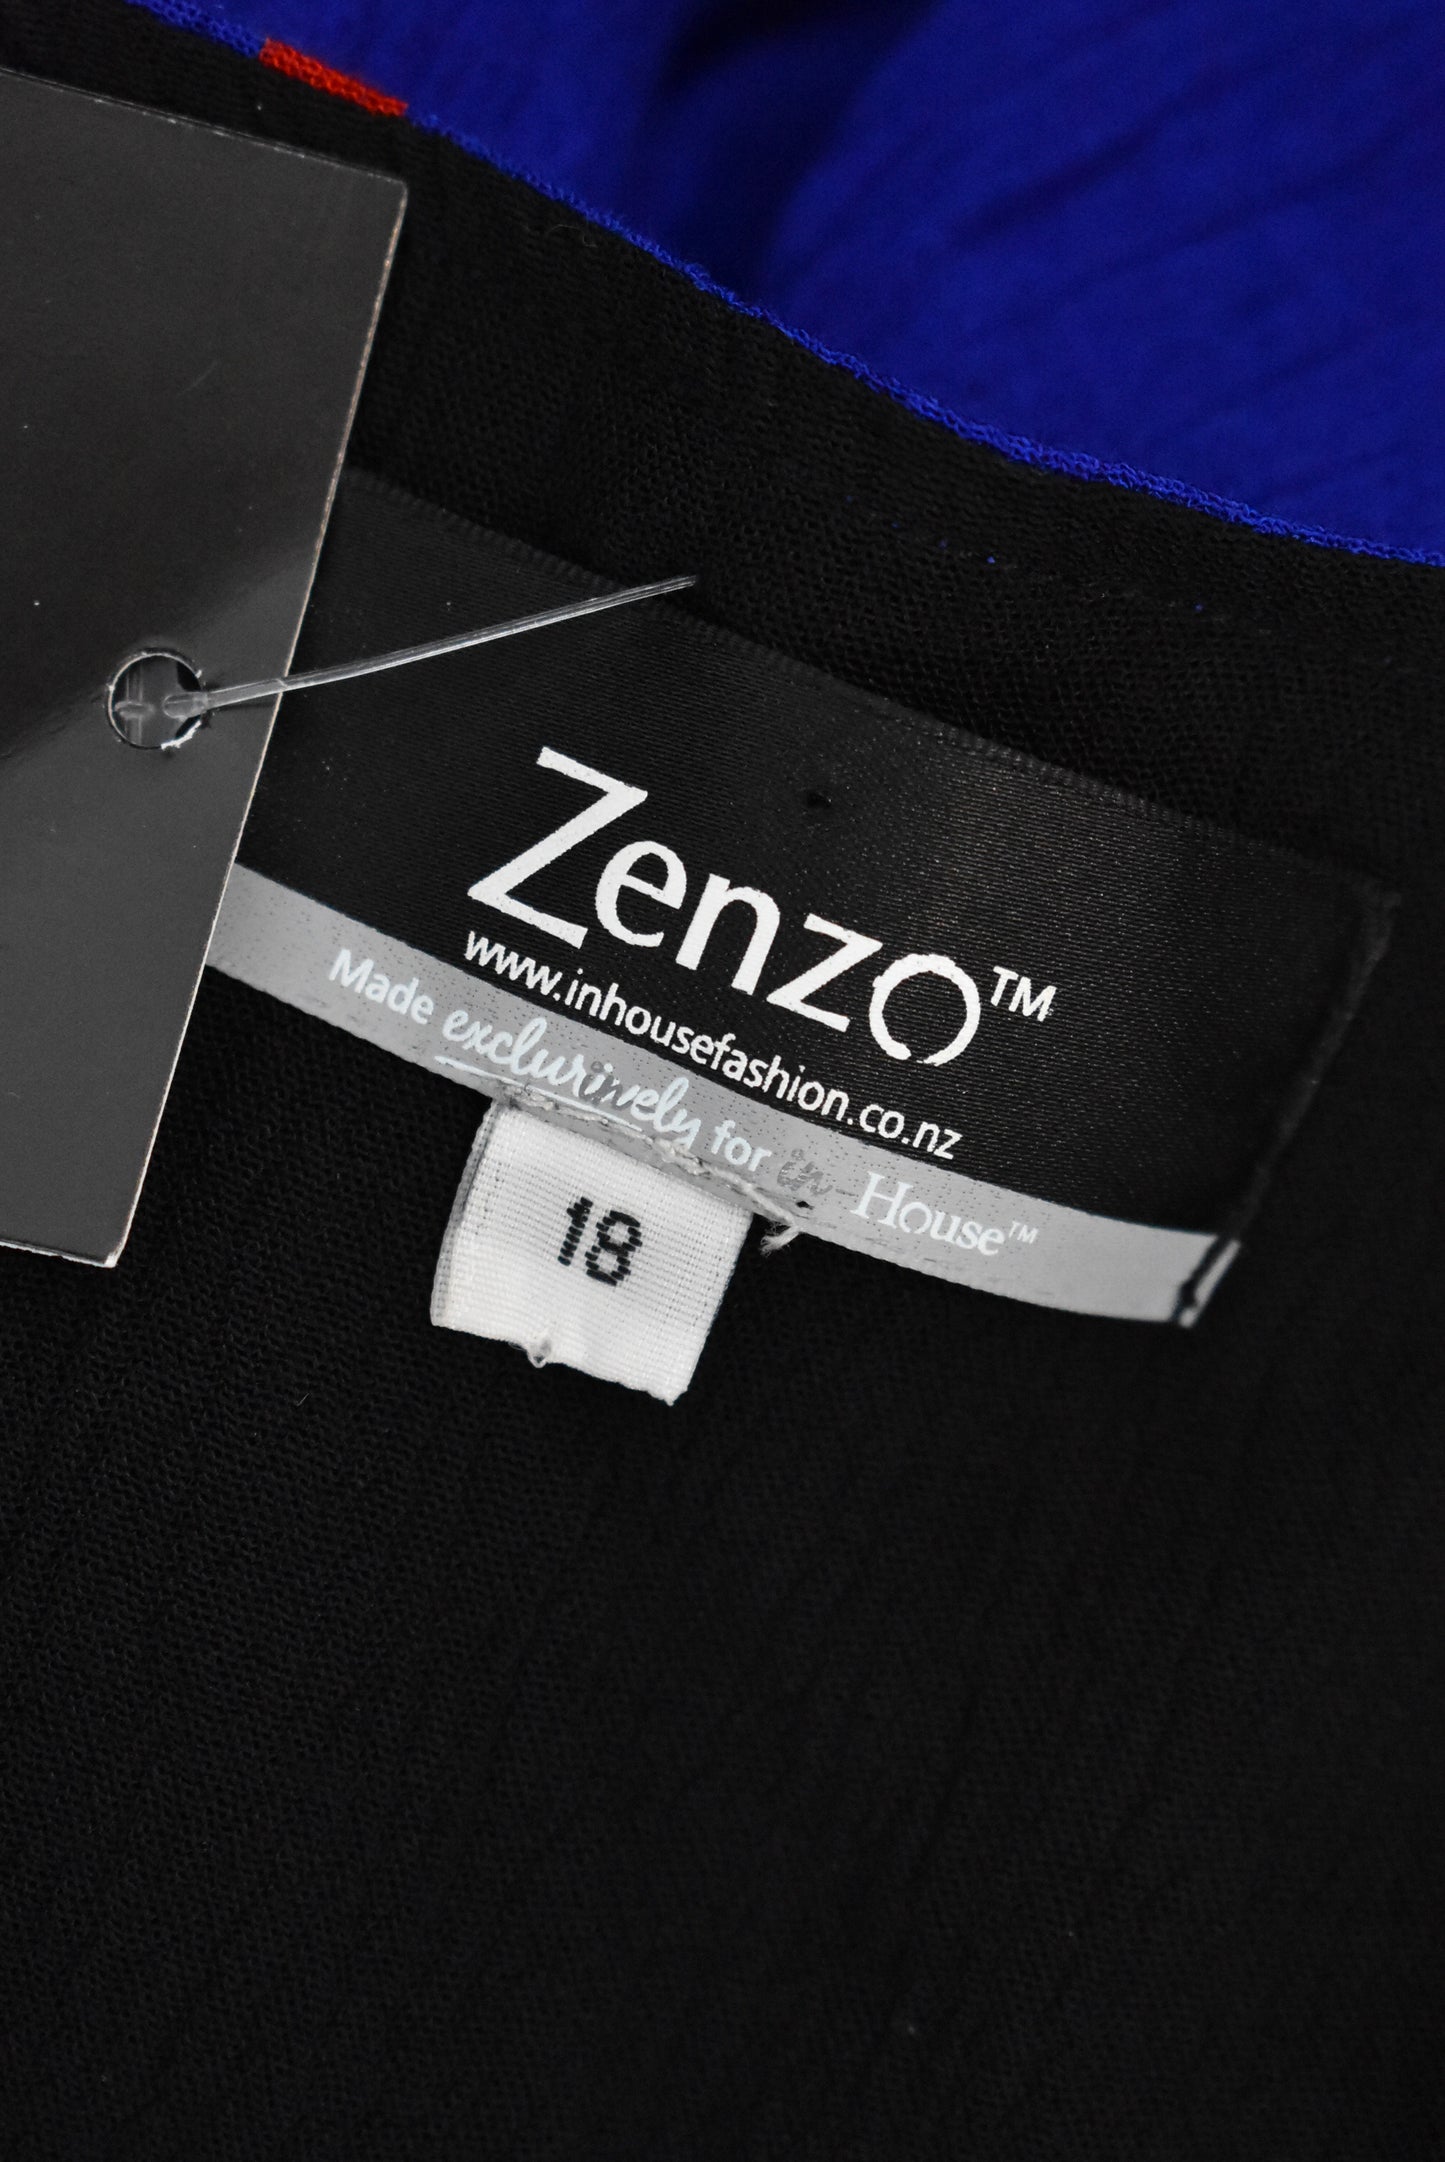 Zenzo artsy royal blue dress, L